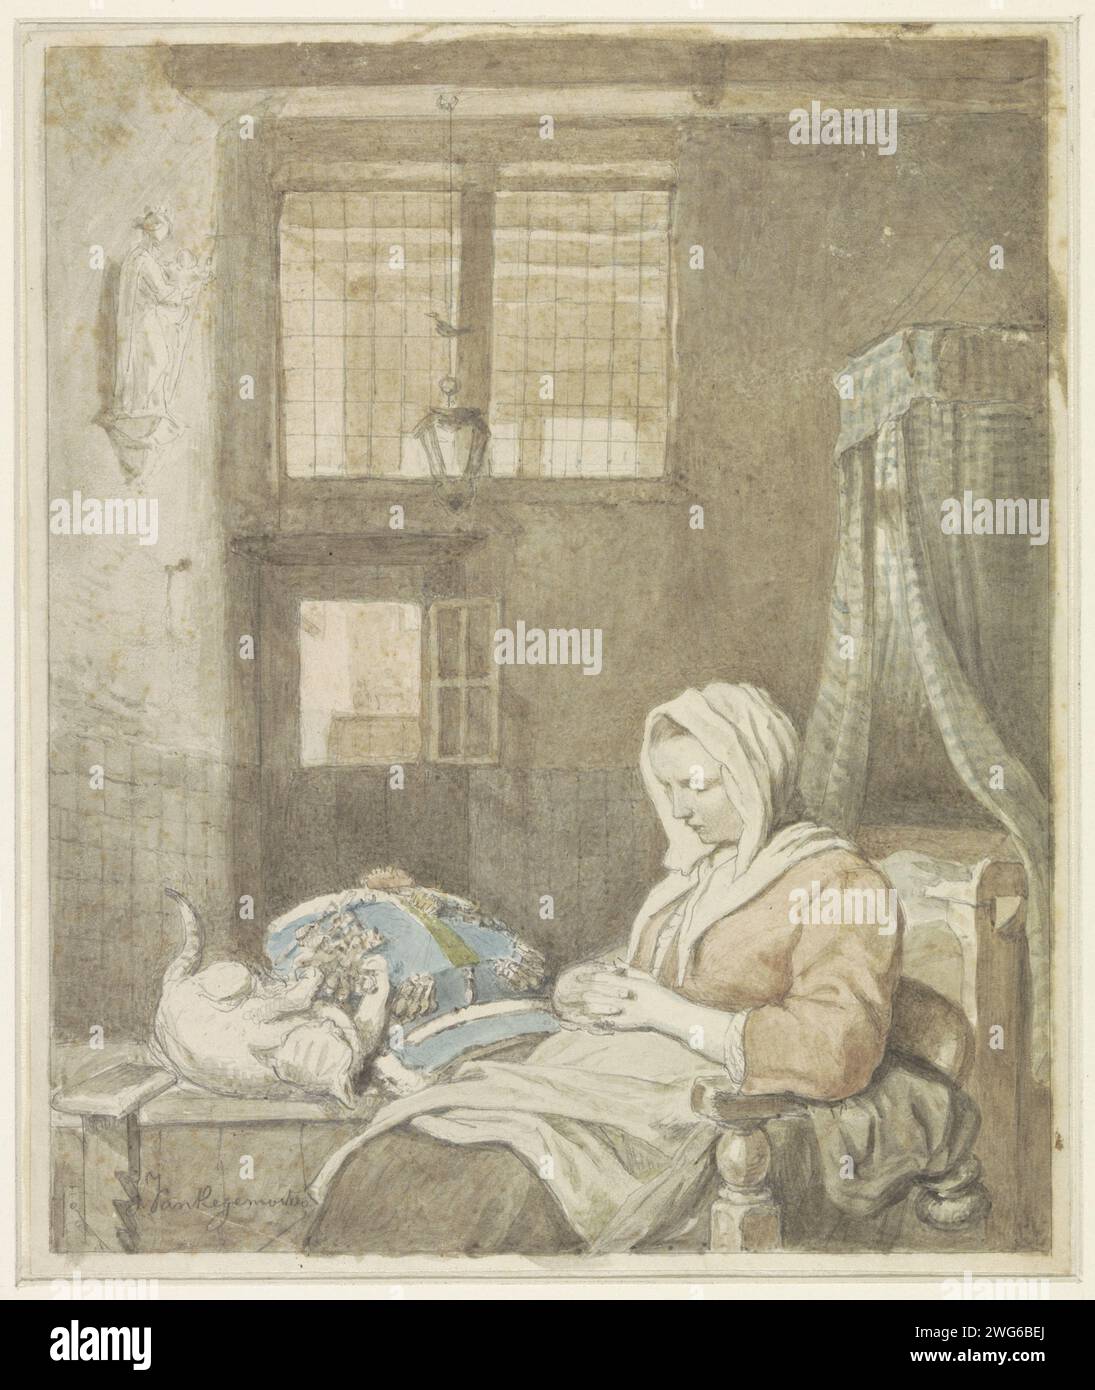 Le travailleur de dentelle de sommeil, Ignatius Josephus van Regemorter, 1795 - 1873 dessin conception pour une impression. papier. aquarelle (peinture). pinceau accusant Banque D'Images